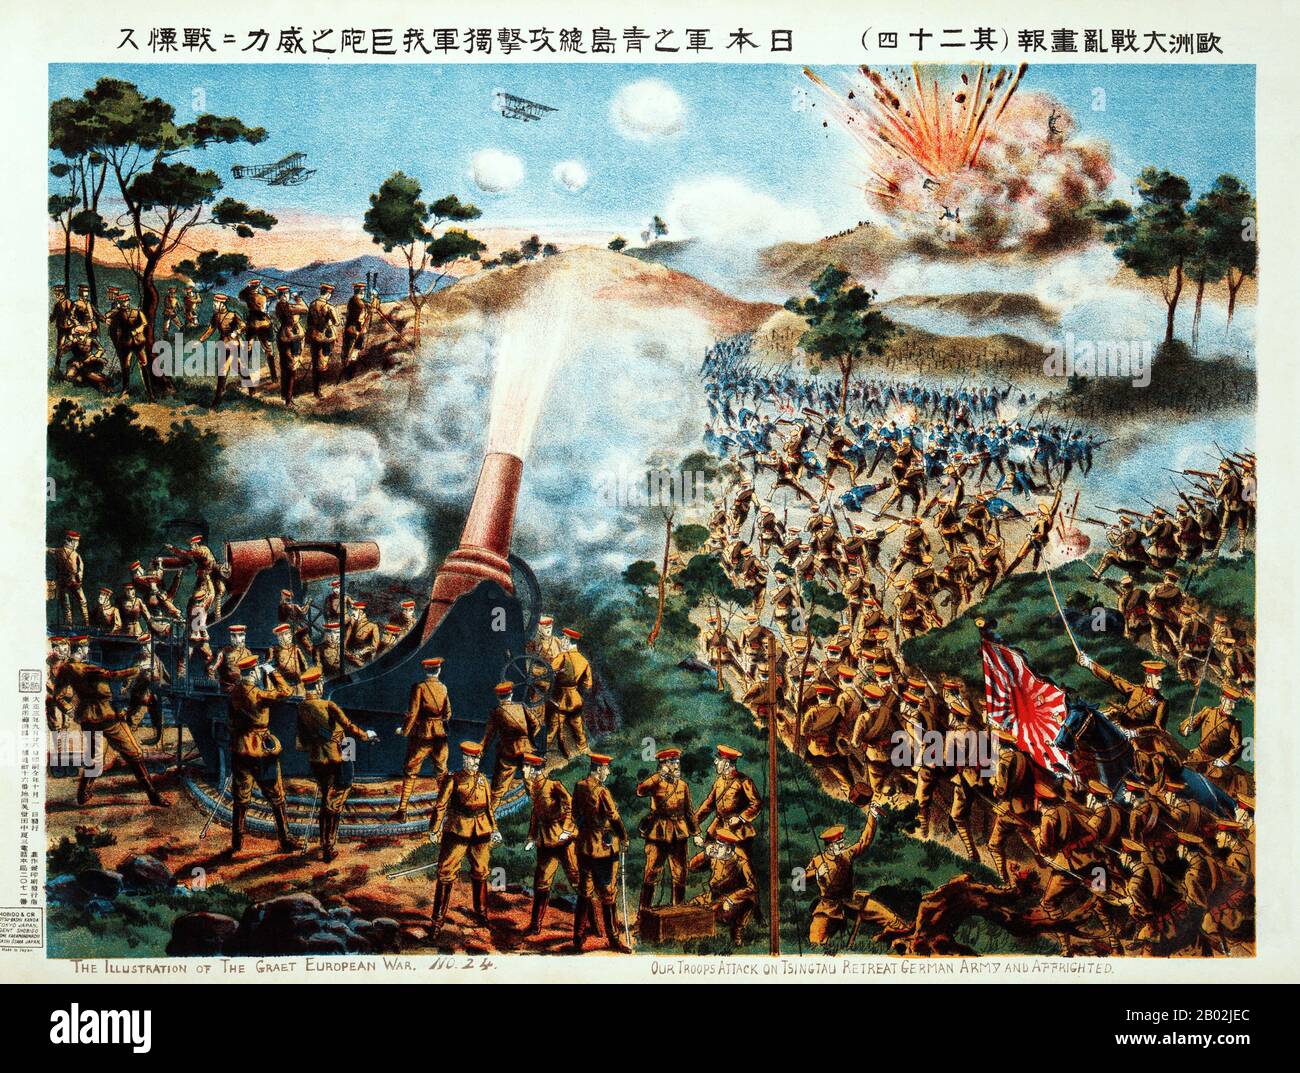 Die Belagerung von Tsingtao war der Angriff auf den deutsch kontrollierten Hafen von Tsingtao (heute Qingdao) in China während des ersten Weltkriegs durch das Kaiserliche Japan und Großbritannien. Sie fand zwischen dem 31. Oktober und dem 7. November 1914 statt und wurde vom Kaiserlichen Japan und dem Vereinigten Königreich gegen Deutschland gekämpft. Es war die erste Begegnung zwischen japanischen und deutschen Streitkräften und auch die erste britisch-japanische Operation während des Krieges. Stockfoto